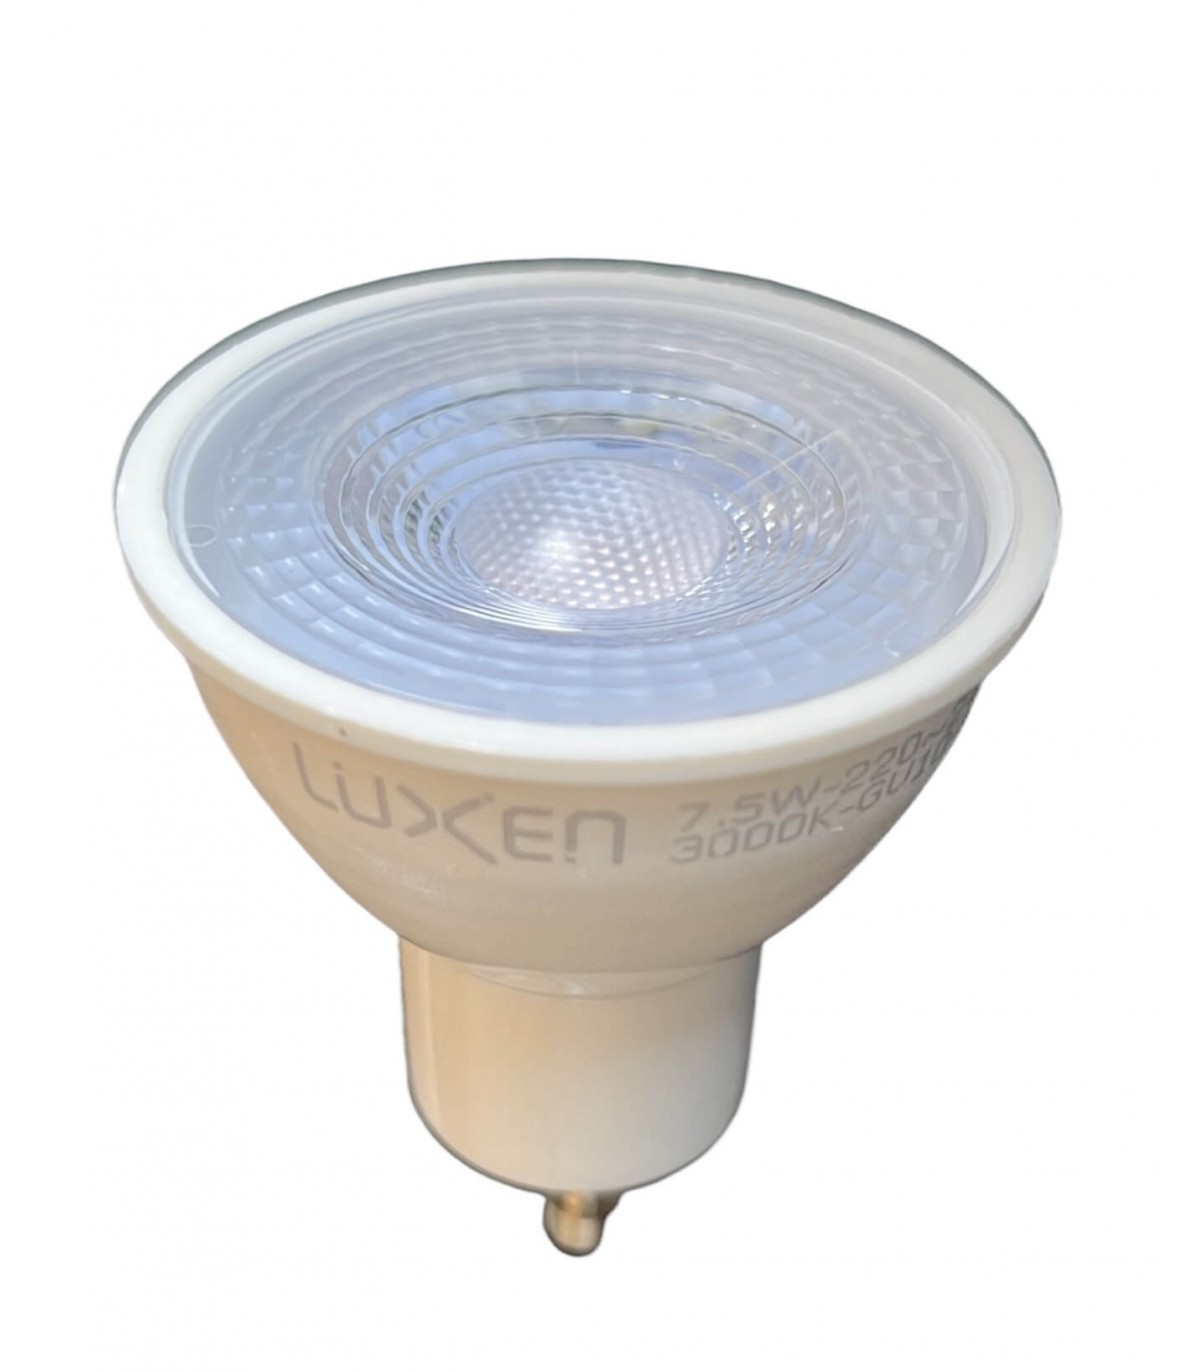 Eclairage LED ampoule, décoration, lampes et spot de qualité en